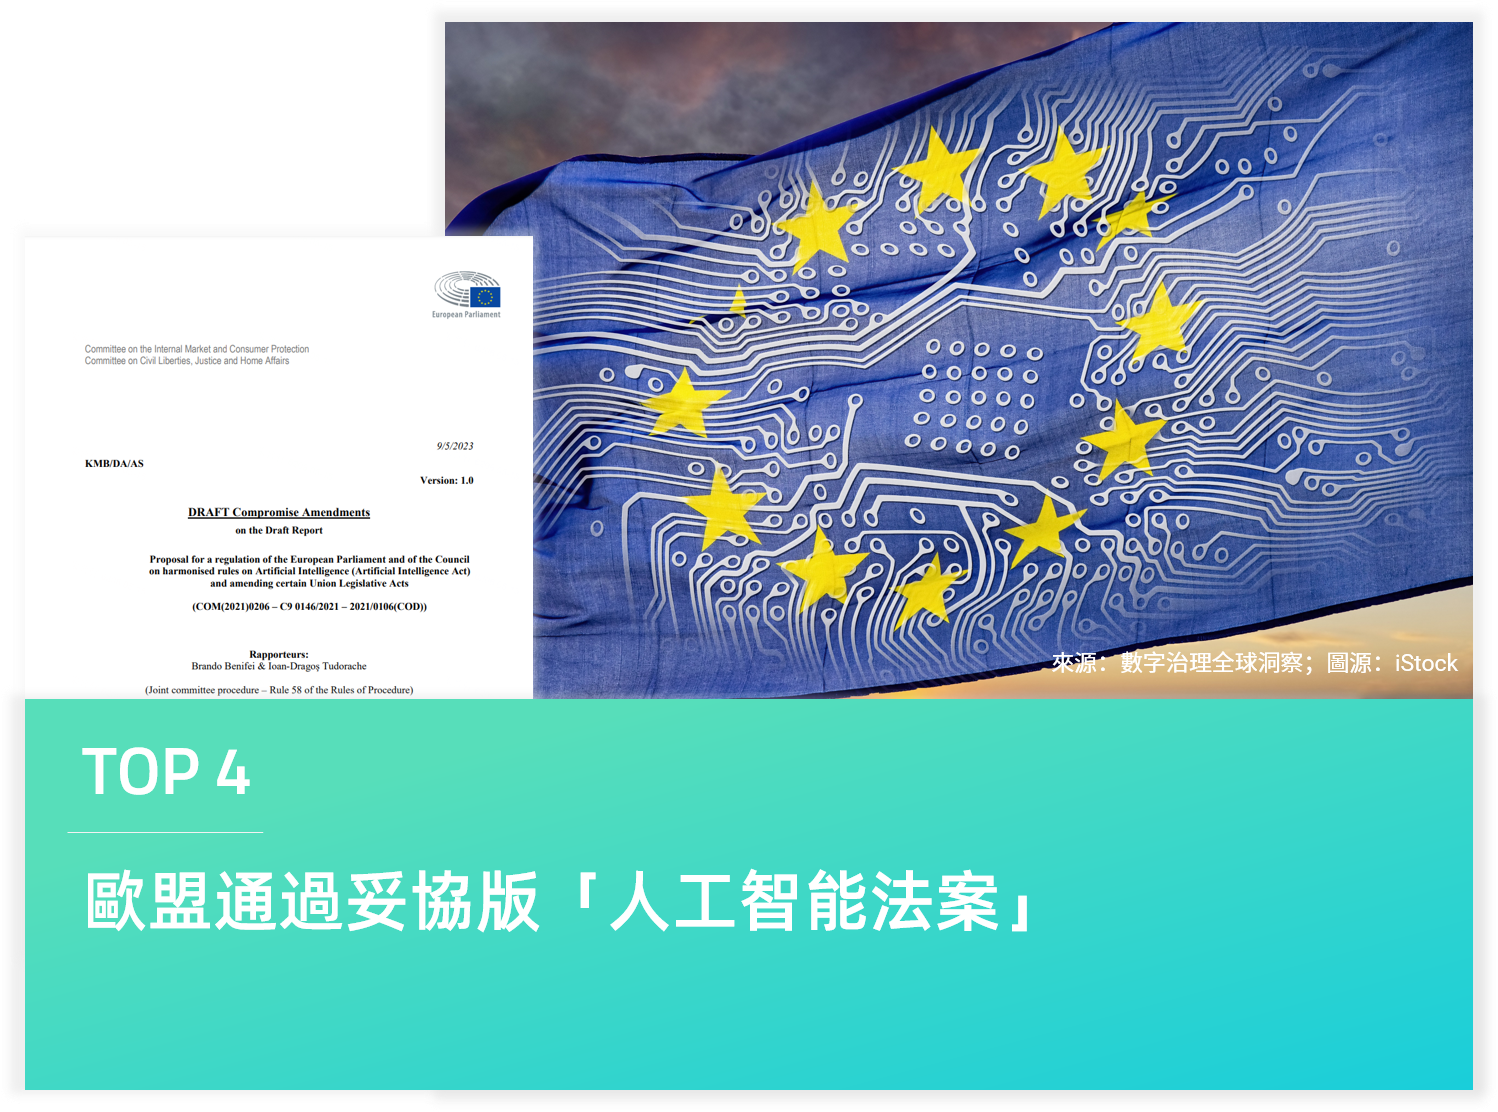 歐盟通過妥協版「人工智能法案」